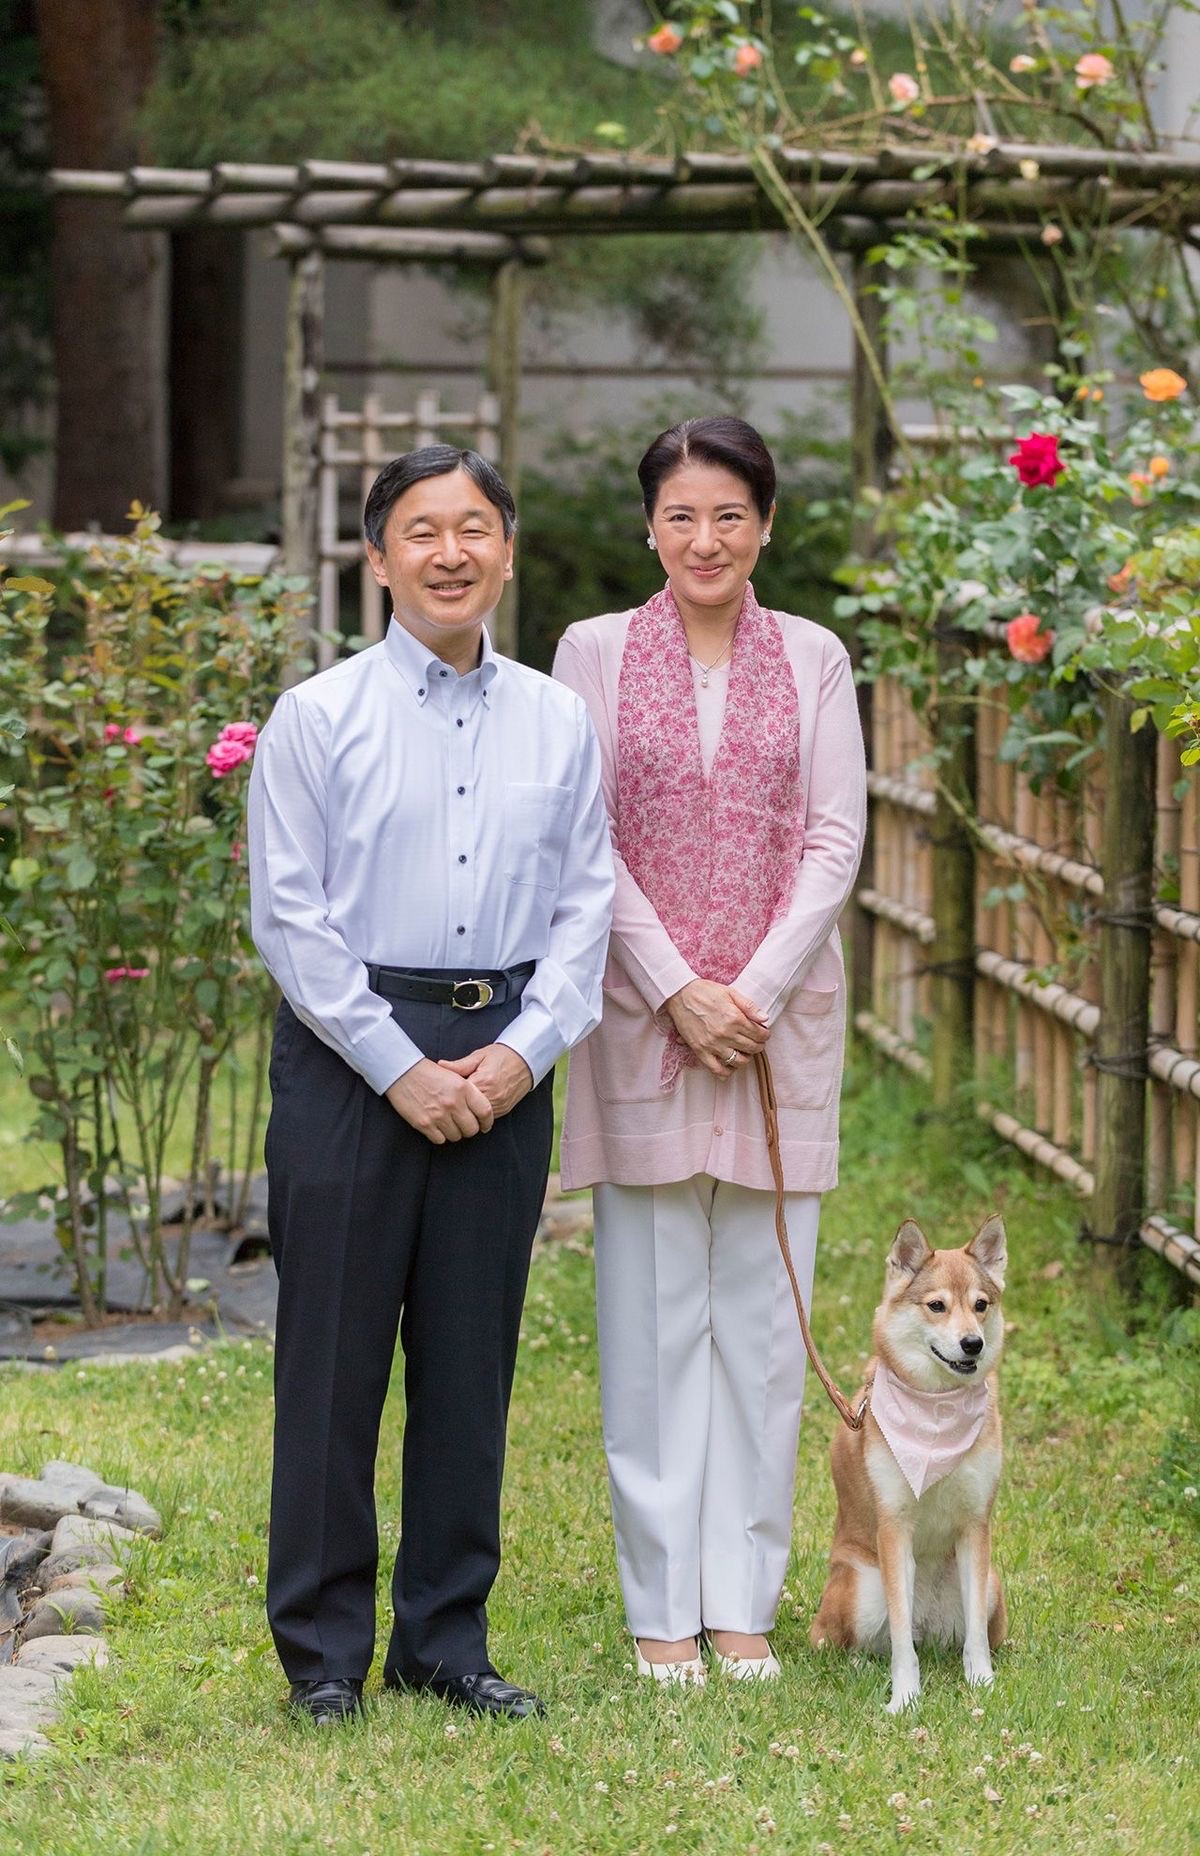 伴随着爱子一起长大的爱犬由莉,是日本德仁天皇家的第四个成员